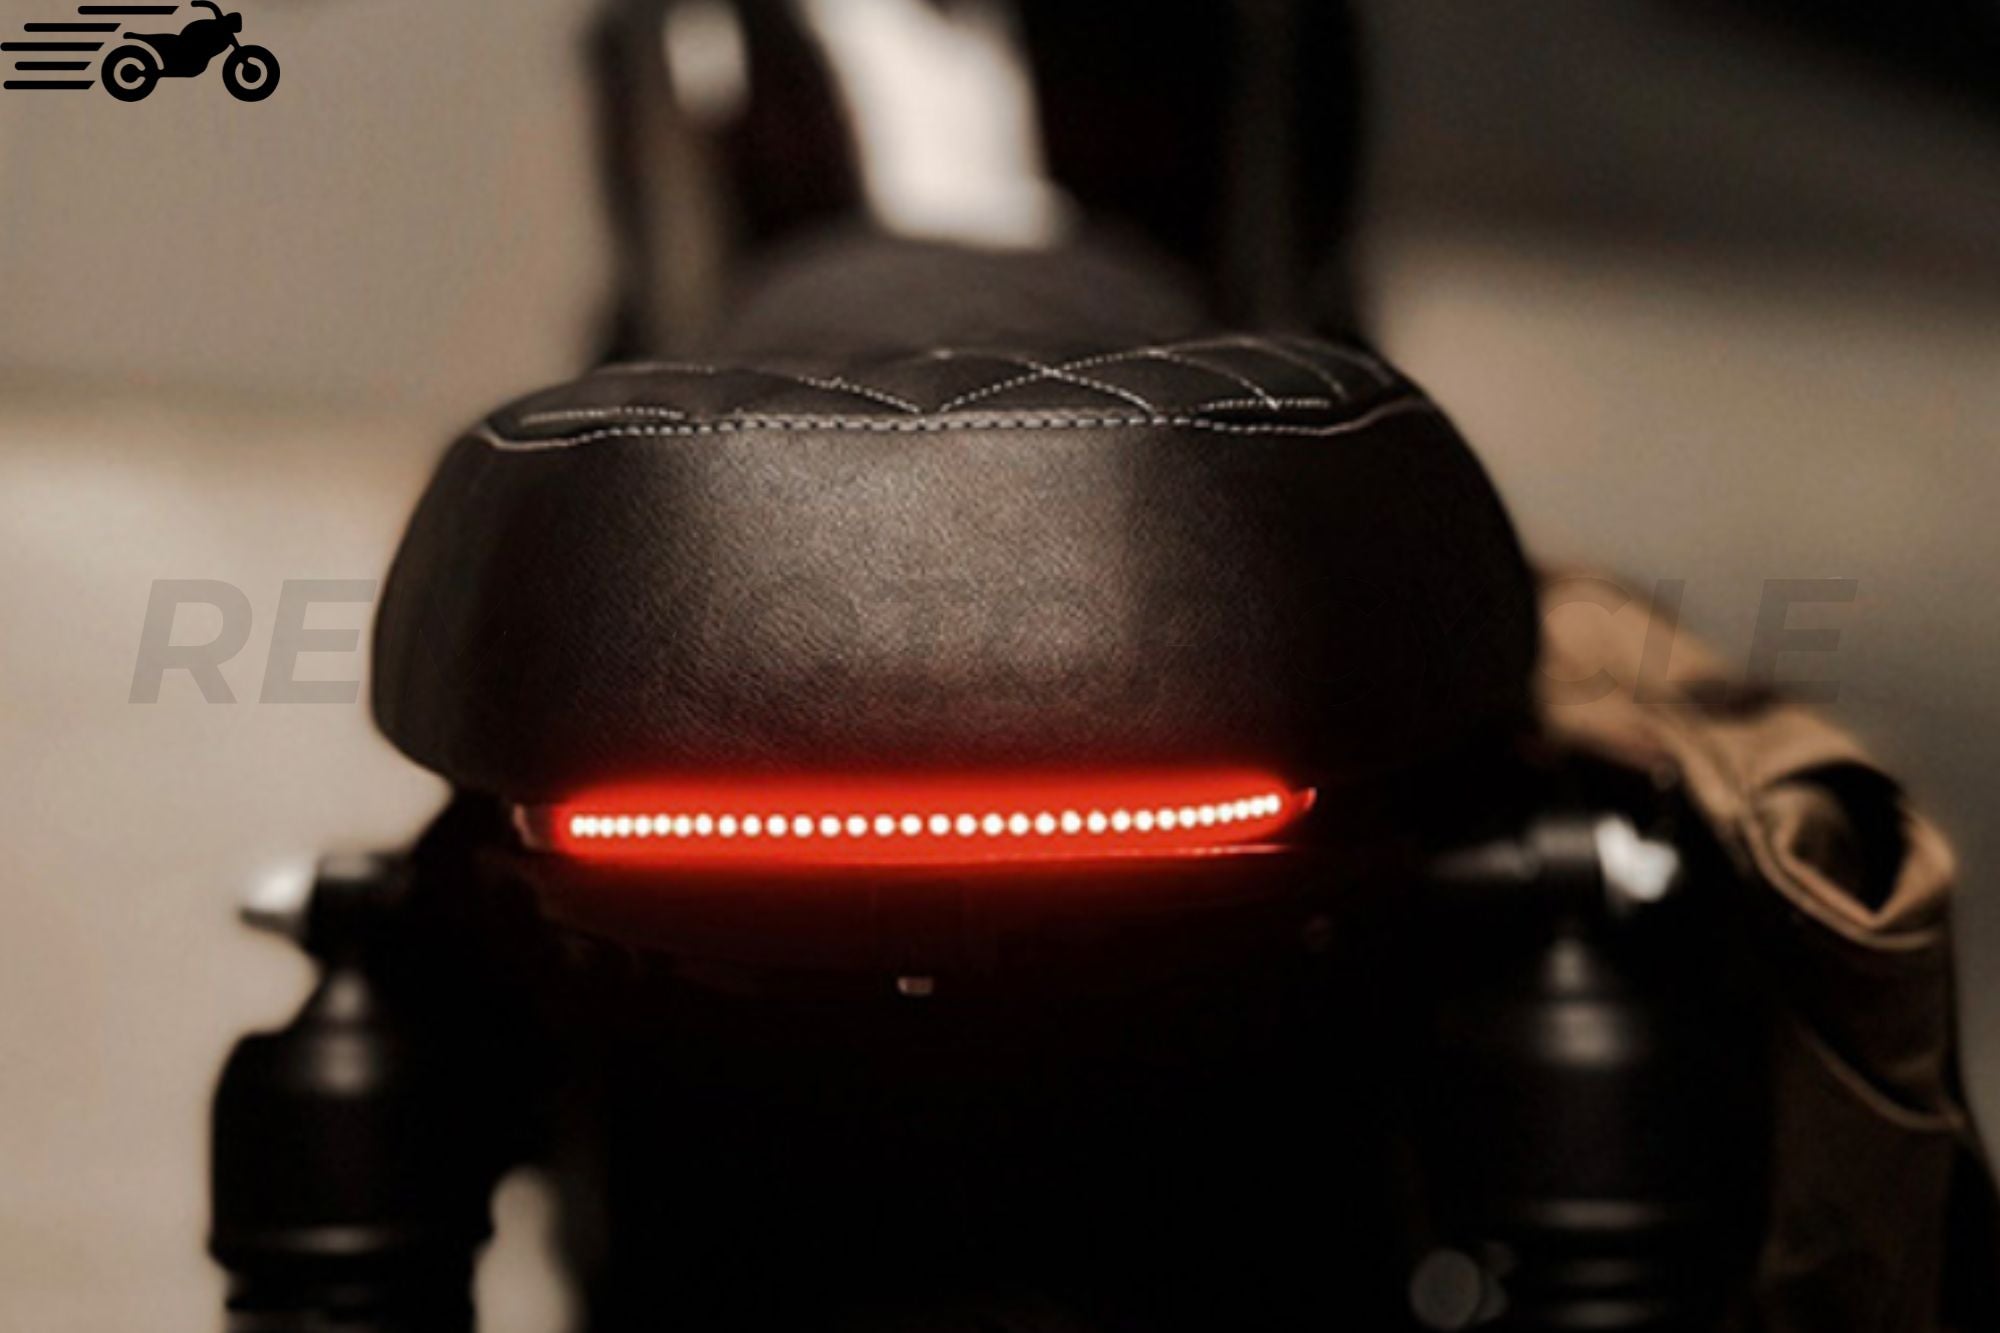 Bande LED pour feux arrière de moto café-racer, bobber ou custom